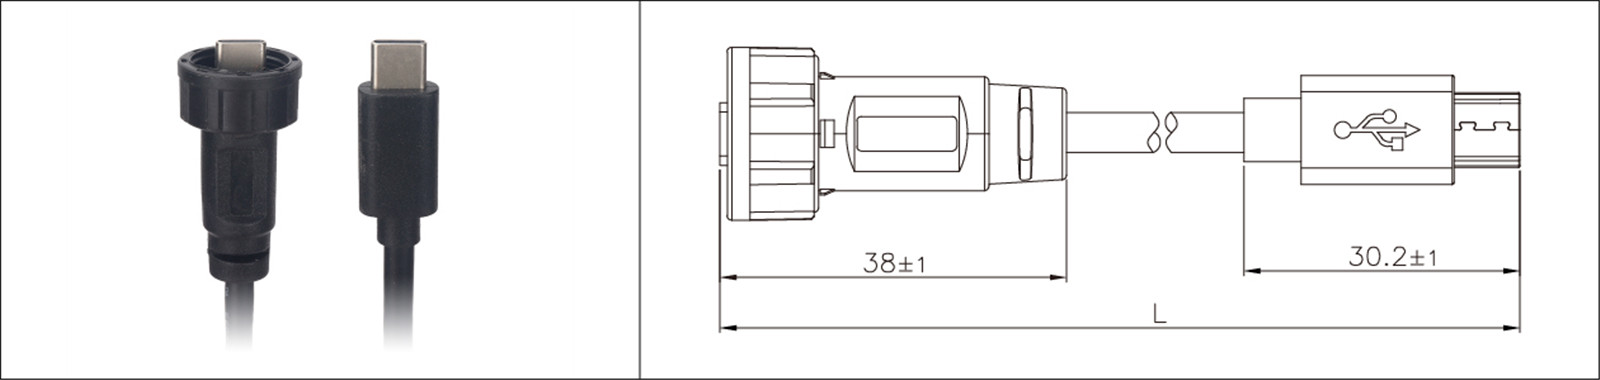 Mikro USB panel montaj tipi 2.0 3.0 dişi ve erkek su geçirmez IP67 aşırı kalıp uzatma kablosu endüstriyel konnektör-02 (7)